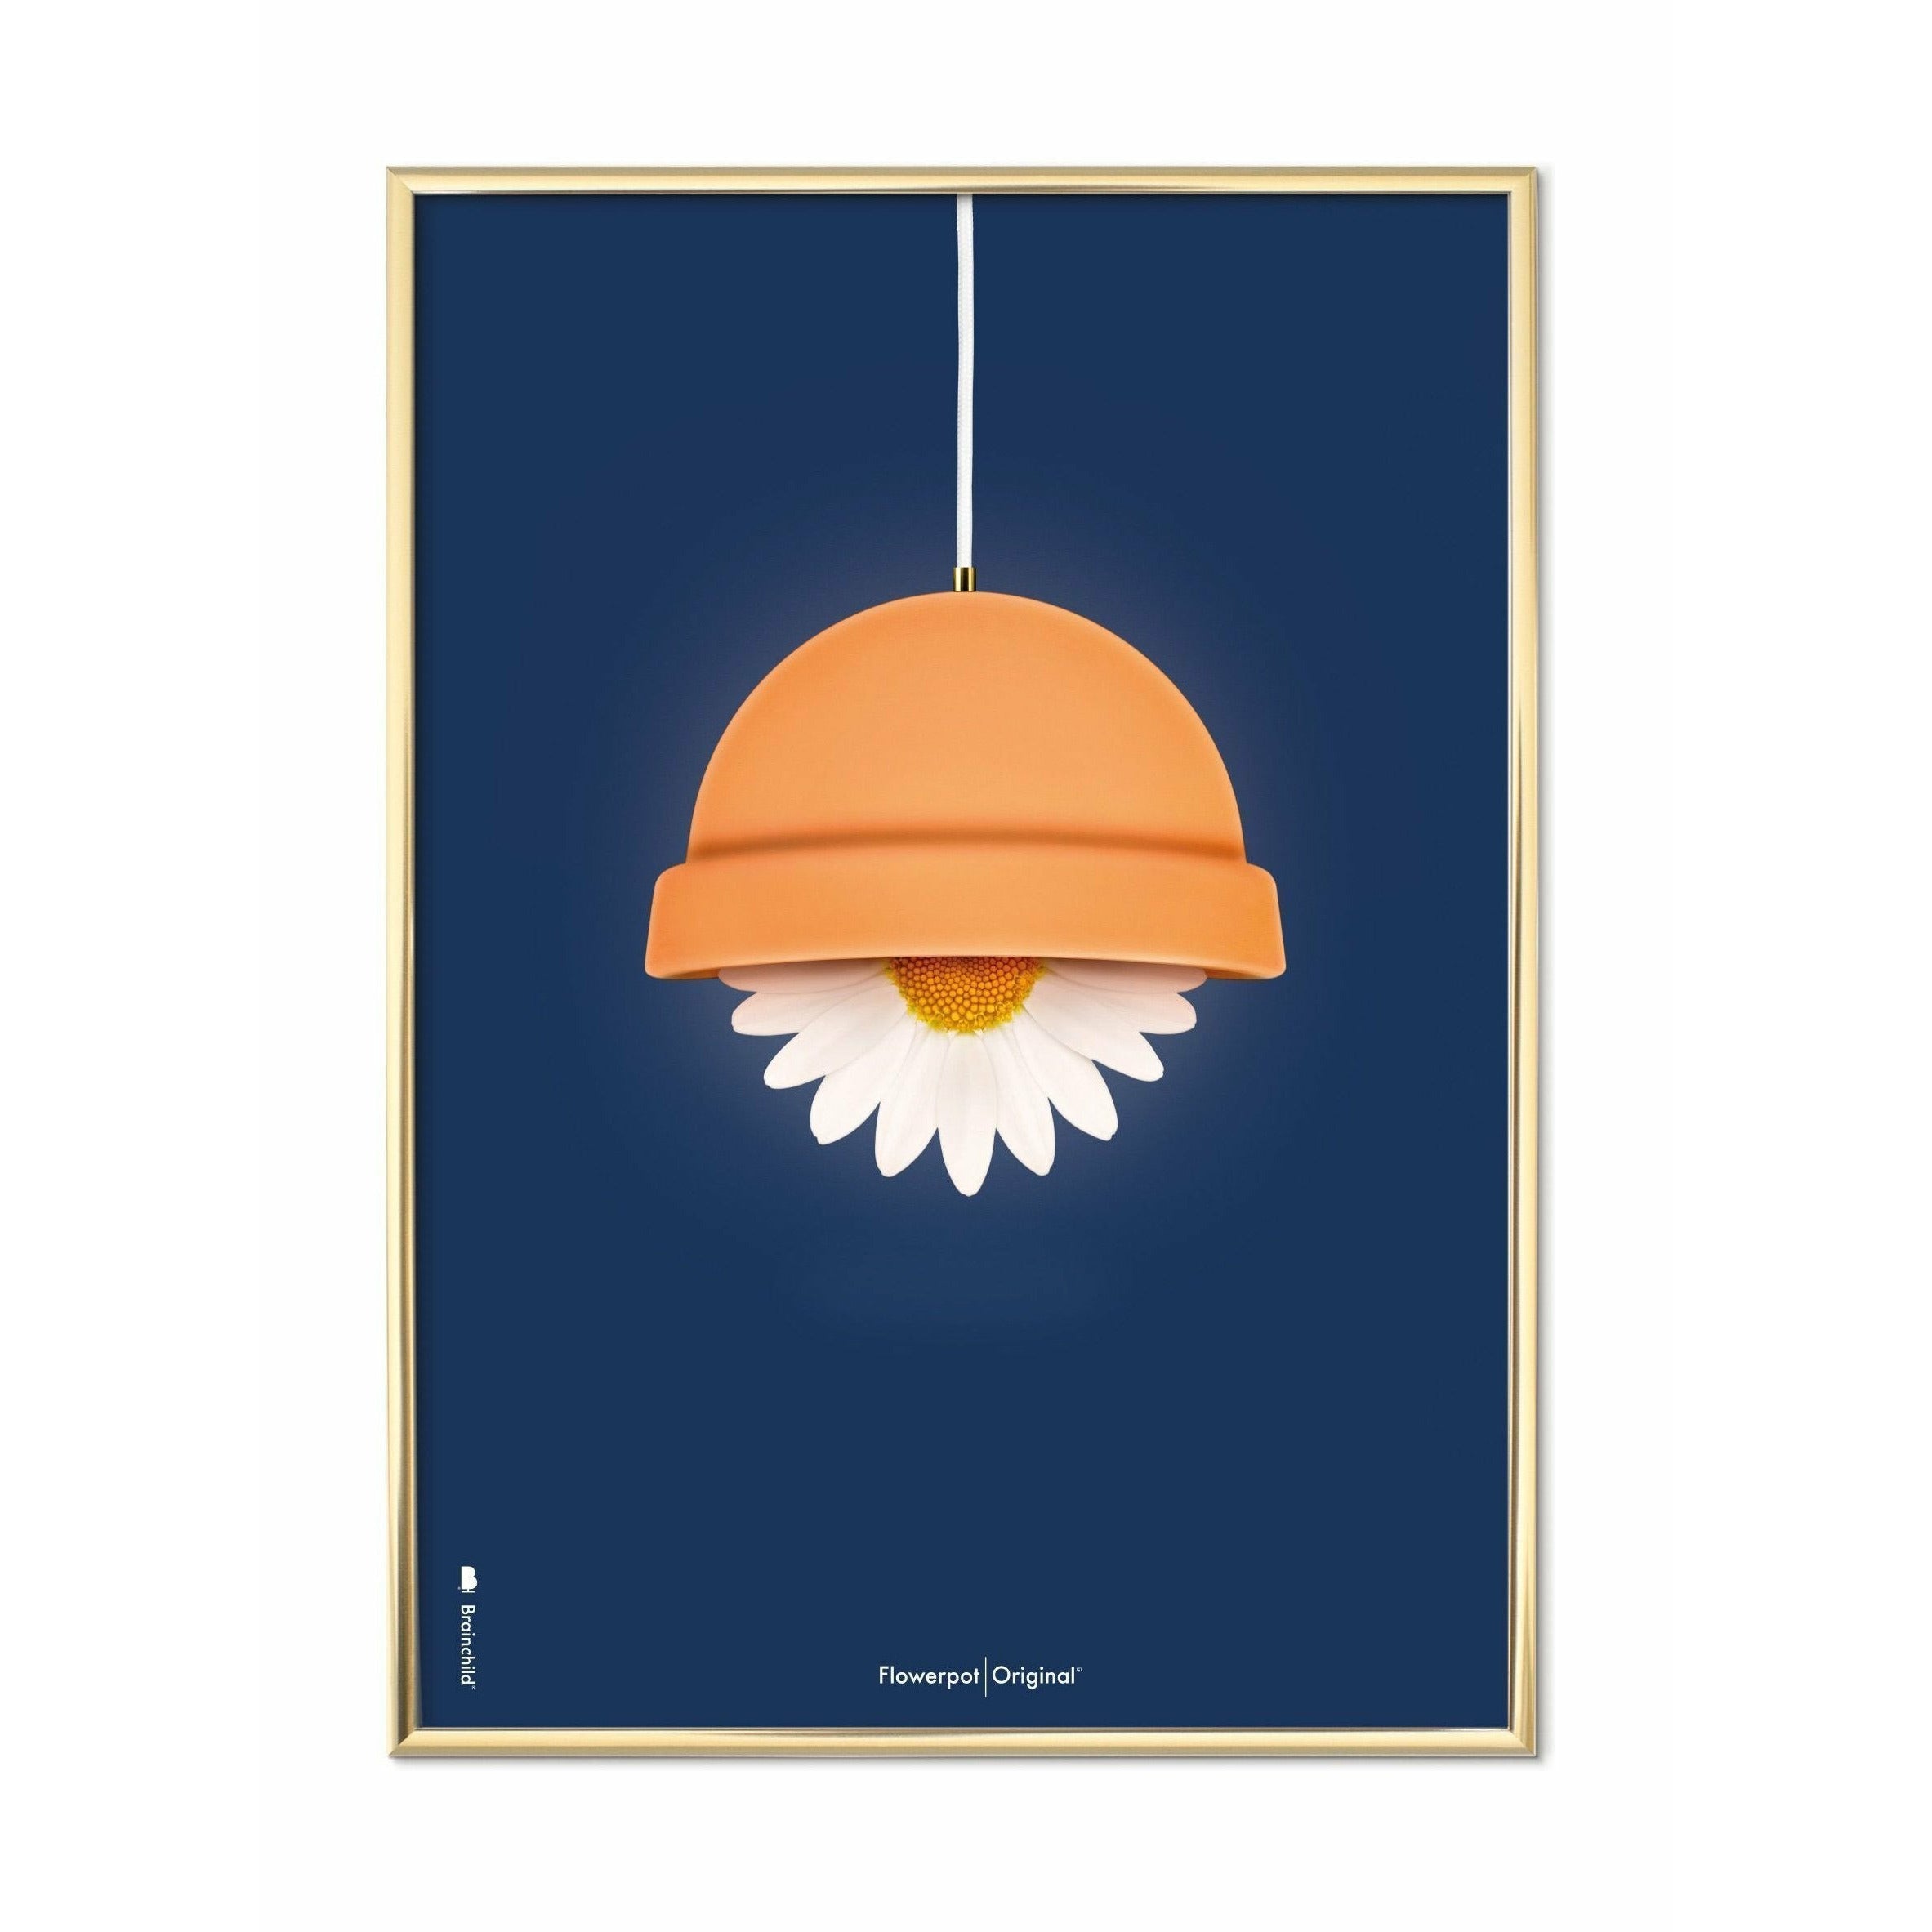 Brainchild Blumentopf Classic Poster, Messingrahmen 50x70 Cm, dunkelblauer Hintergrund